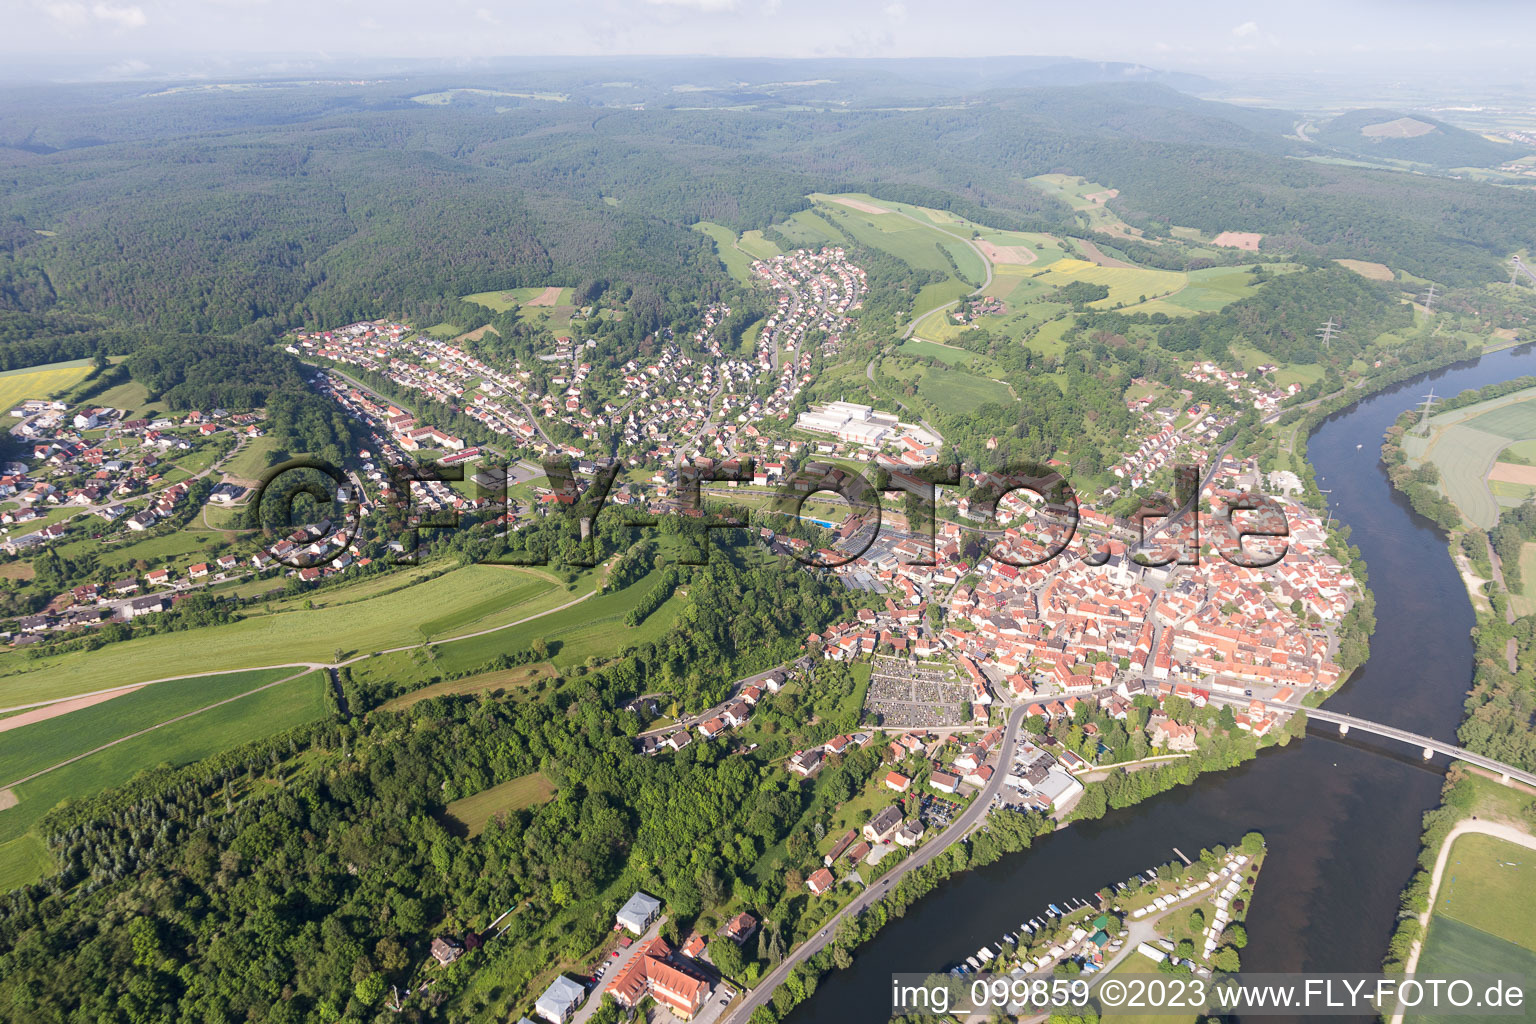 Eltmann im Bundesland Bayern, Deutschland aus der Drohnenperspektive